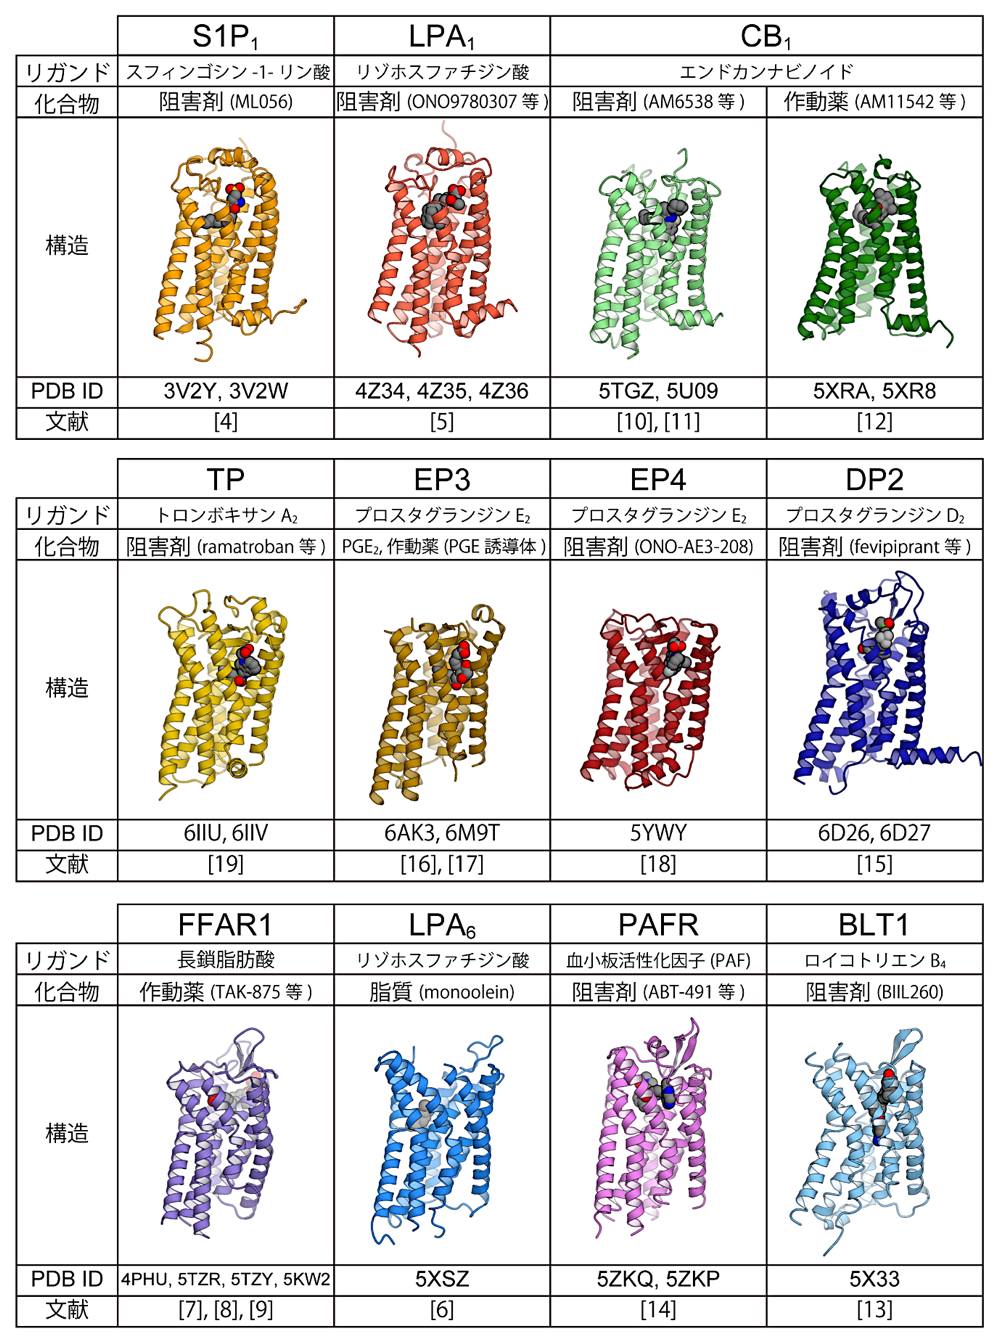 図3：脂質受容GPCRの既知構造（TM7側から見た図）。文献番号は本文に対応。リガンド：生理的リガンド、化合物：共結晶化された化合物。